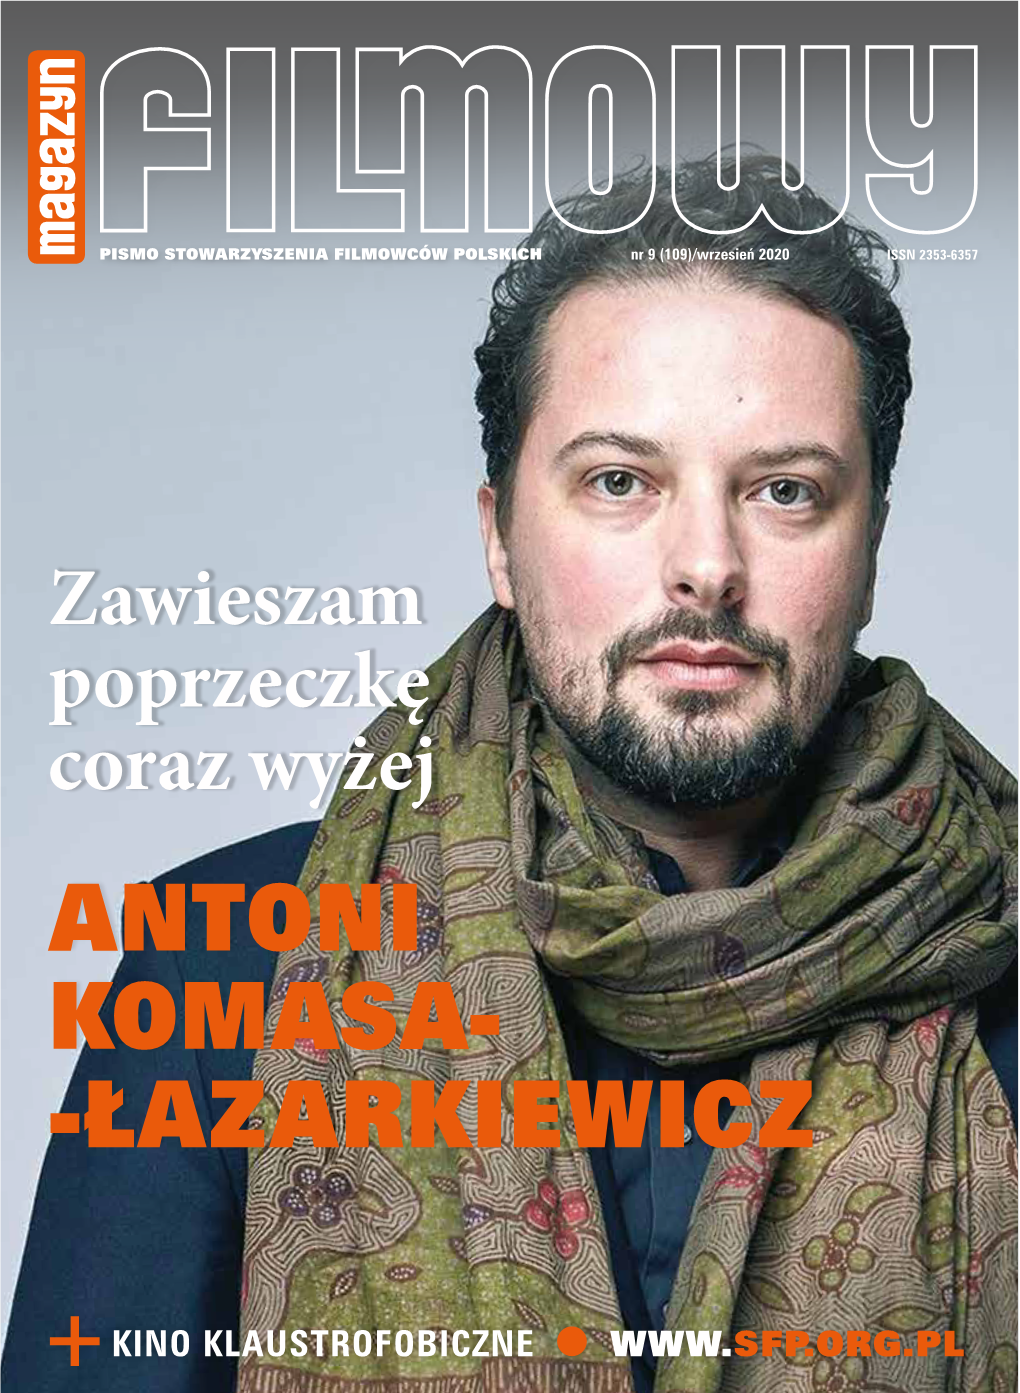 Antoni Komasa- -Łazarkiewicz